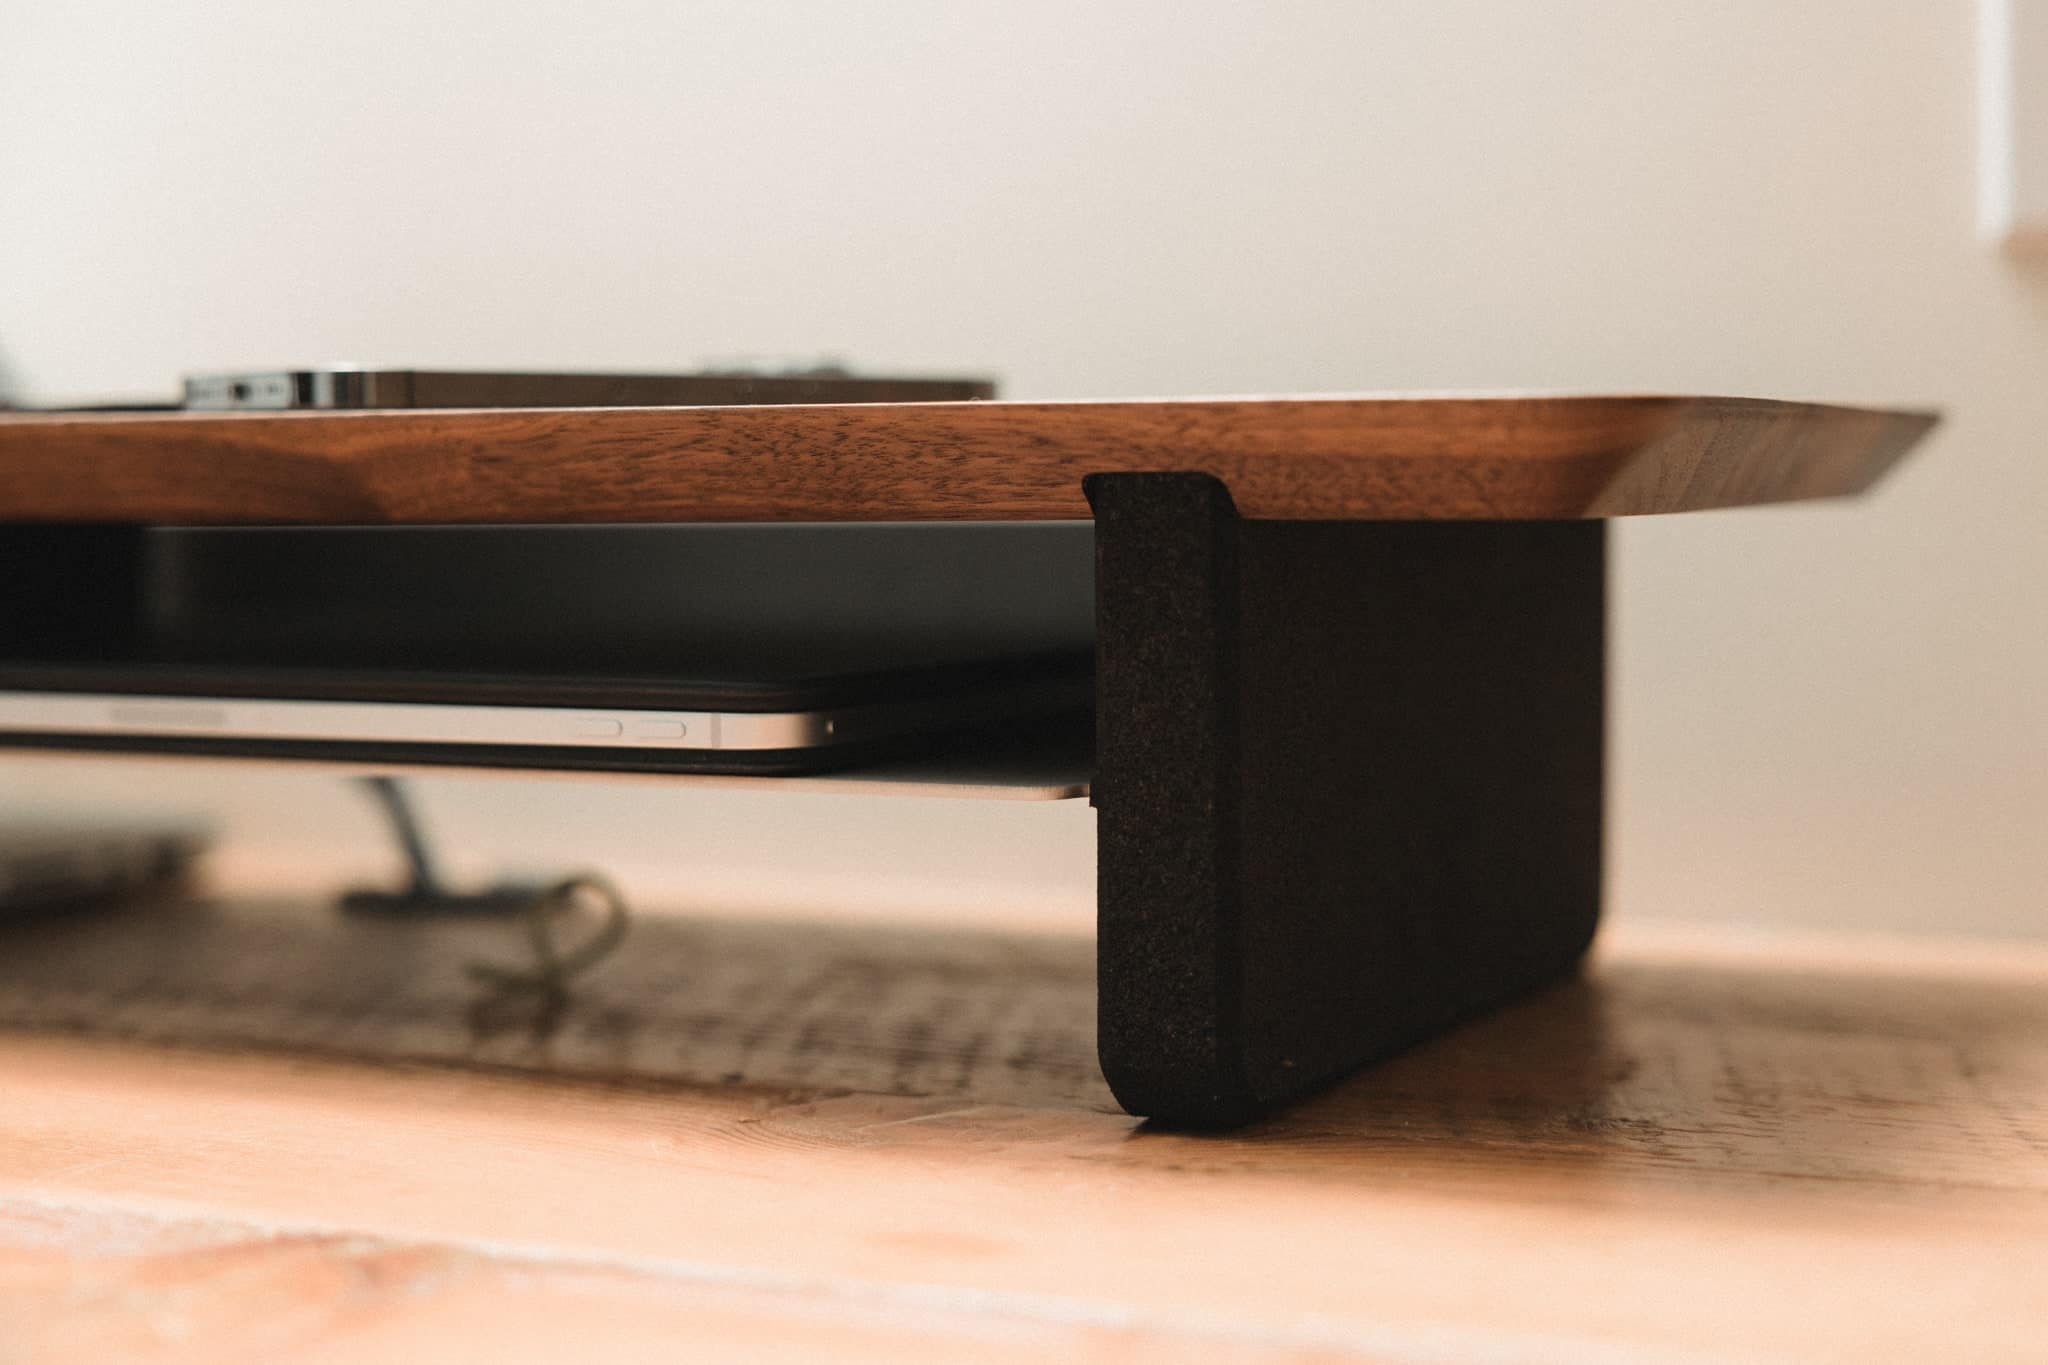 Unlock Your Setup’s Beauty With the Grovemade Desk Shelf – The Sweet Setup